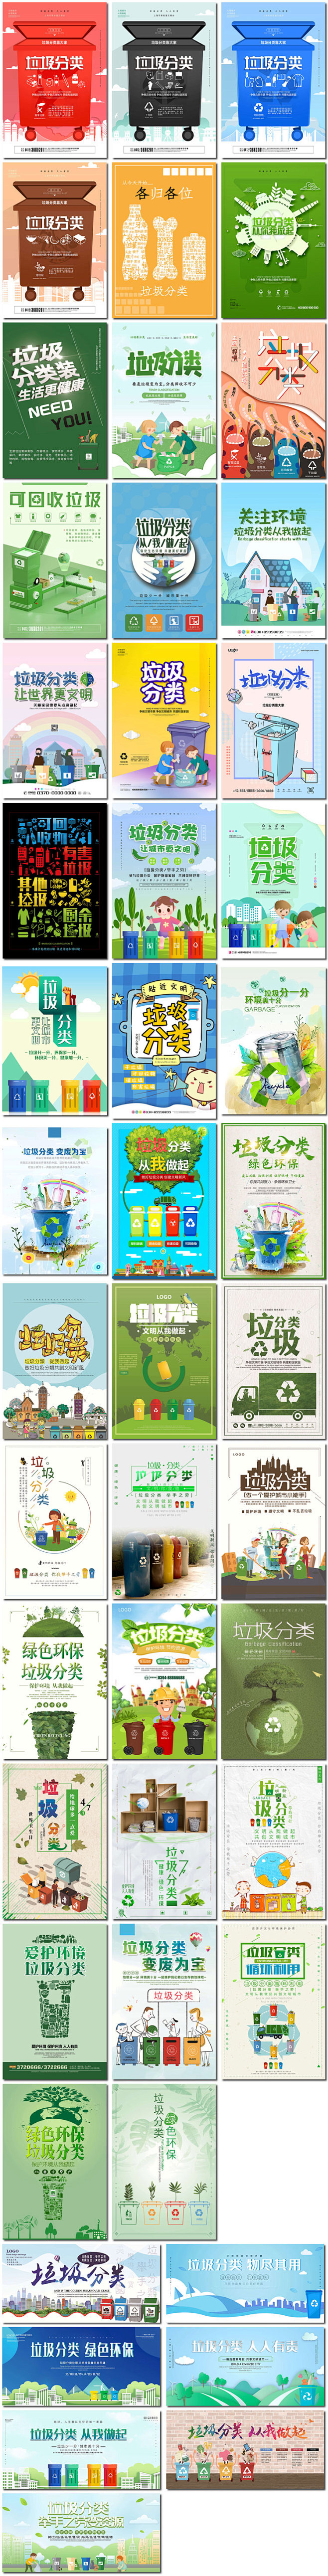 垃圾分类绿色环保文明城市创意公益海报展板插画psd设计素材模板淘宝